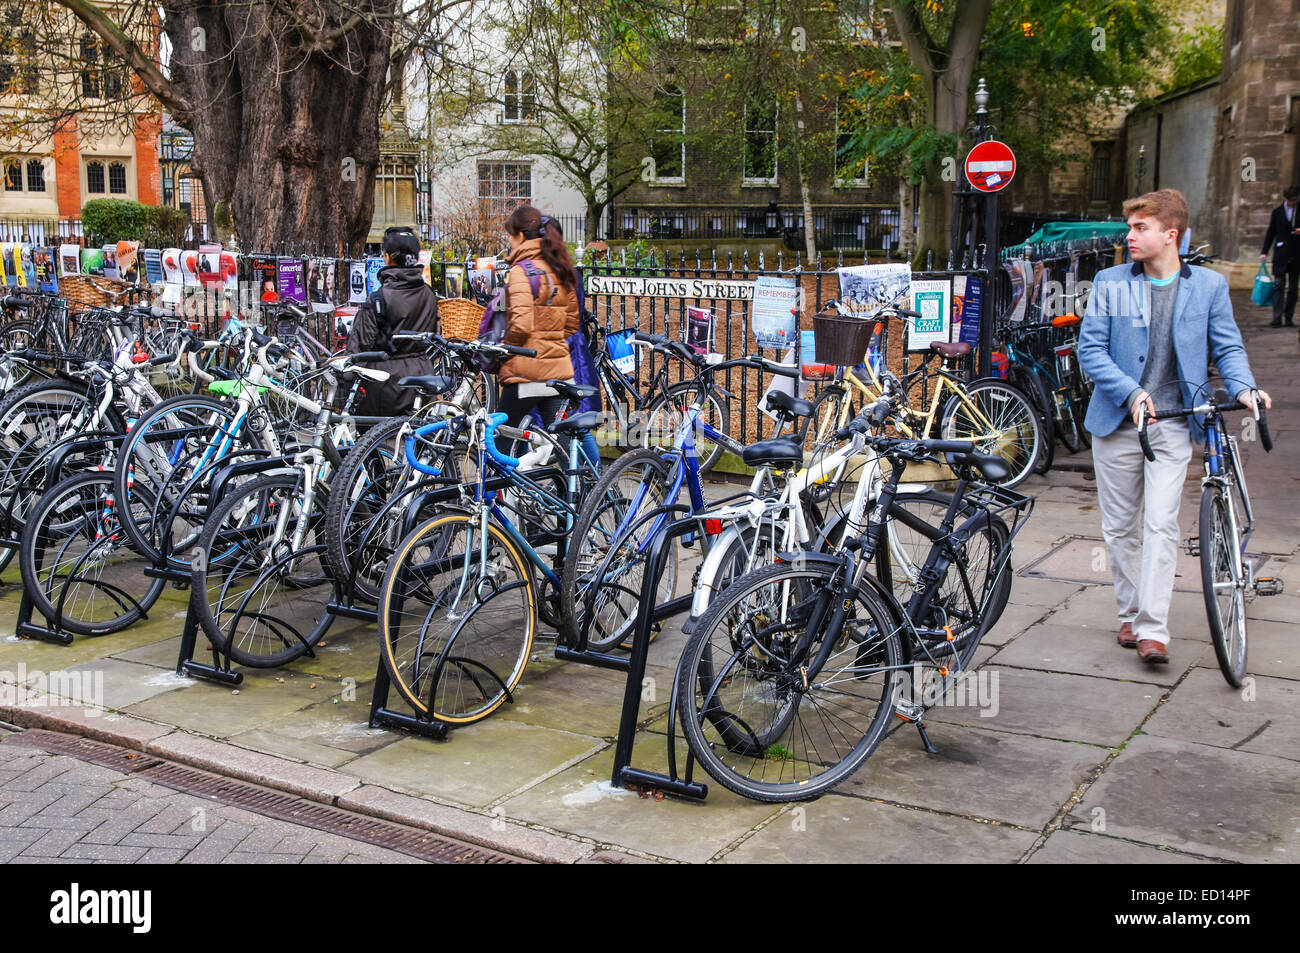 Les vélos garés à un porte vélo à Cambridge Cambridgeshire Angleterre Royaume-Uni UK Banque D'Images